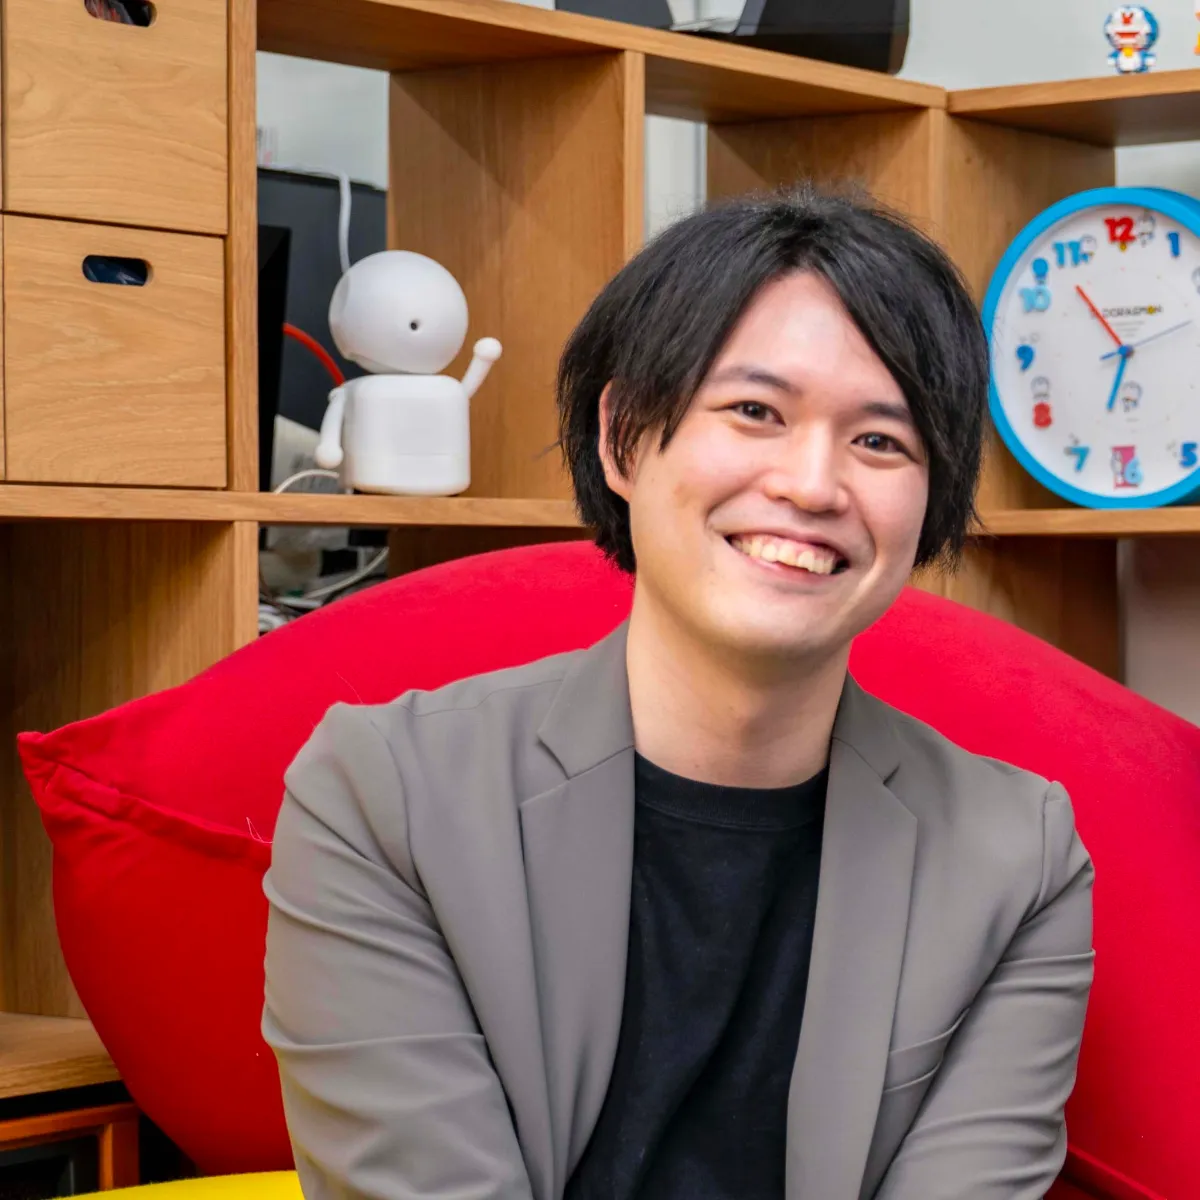 サイエンスコミュニケーターで『Neu World』プロデューサーの宮田龍氏の笑顔の写真。